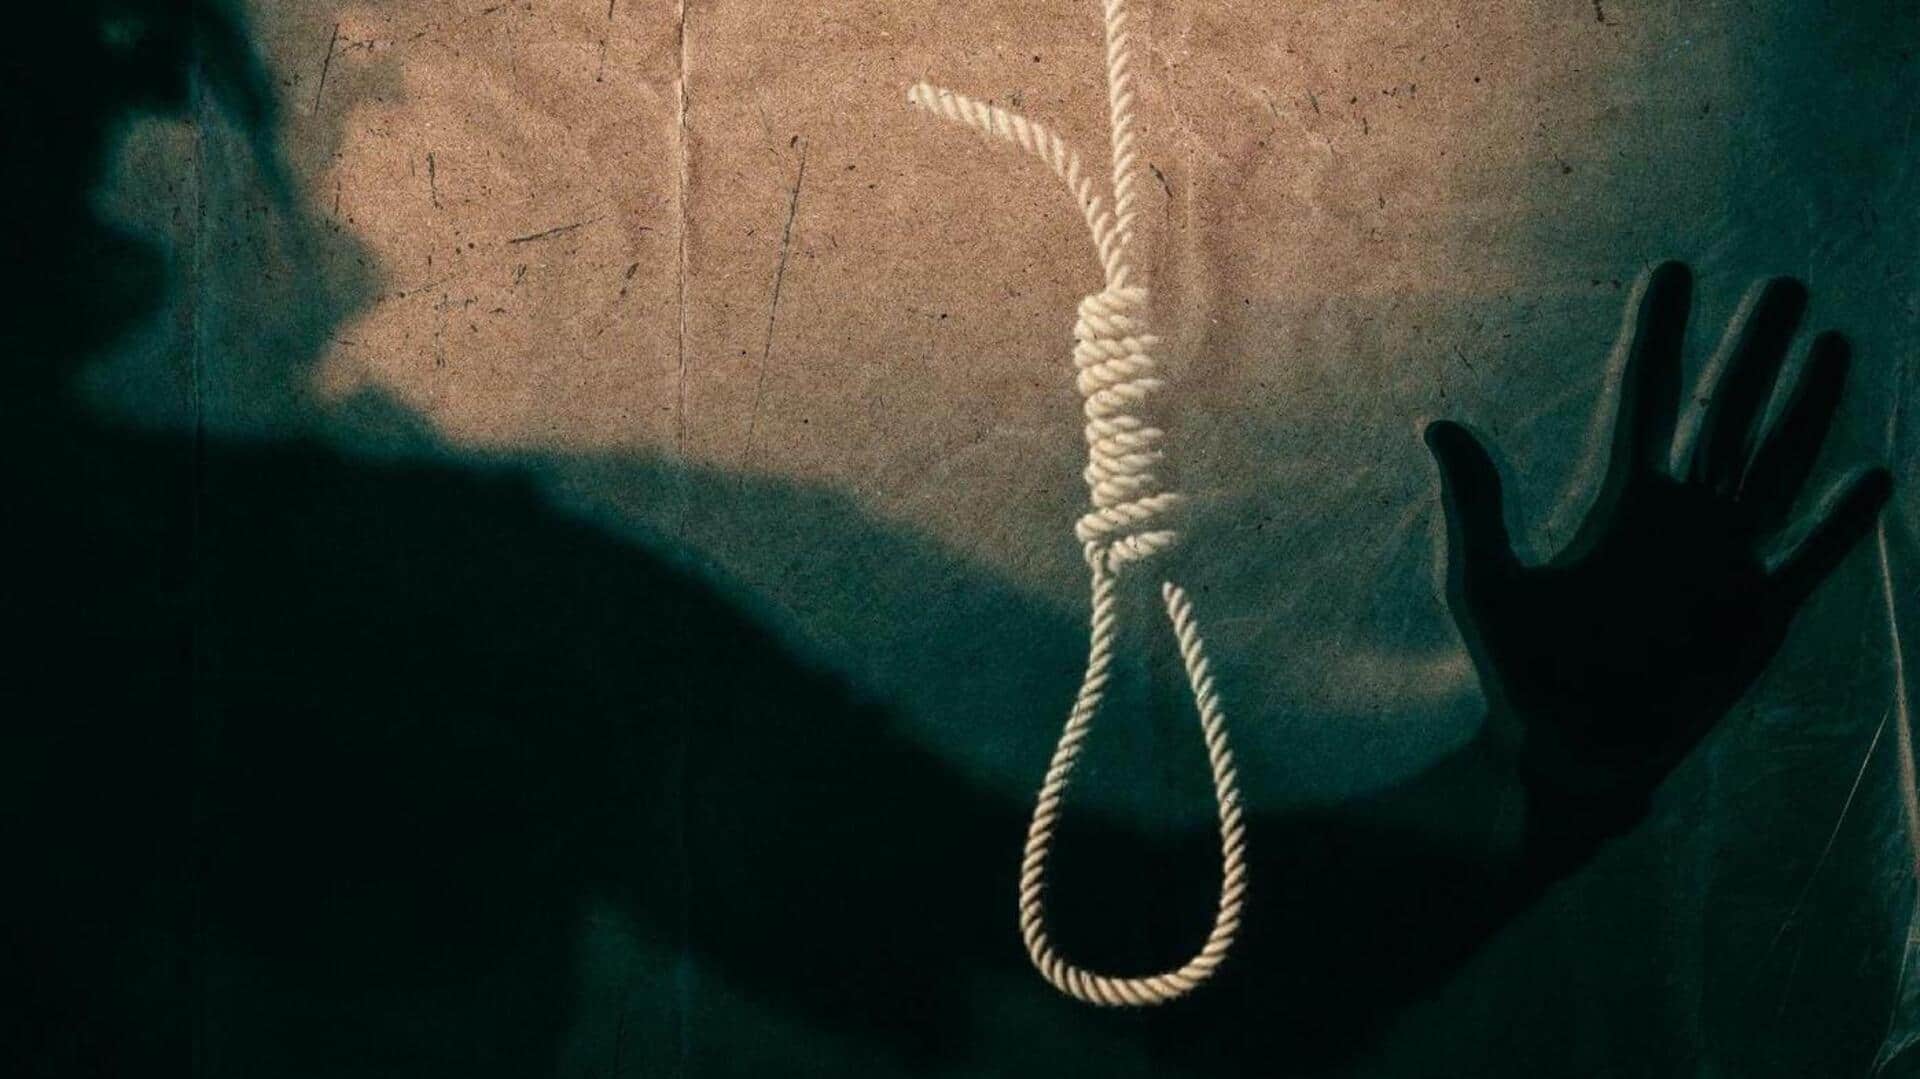 कोटा: पढ़ाई के दबाव में एक और छात्र ने दी जान, 1 हफ्ते में तीसरी आत्महत्या